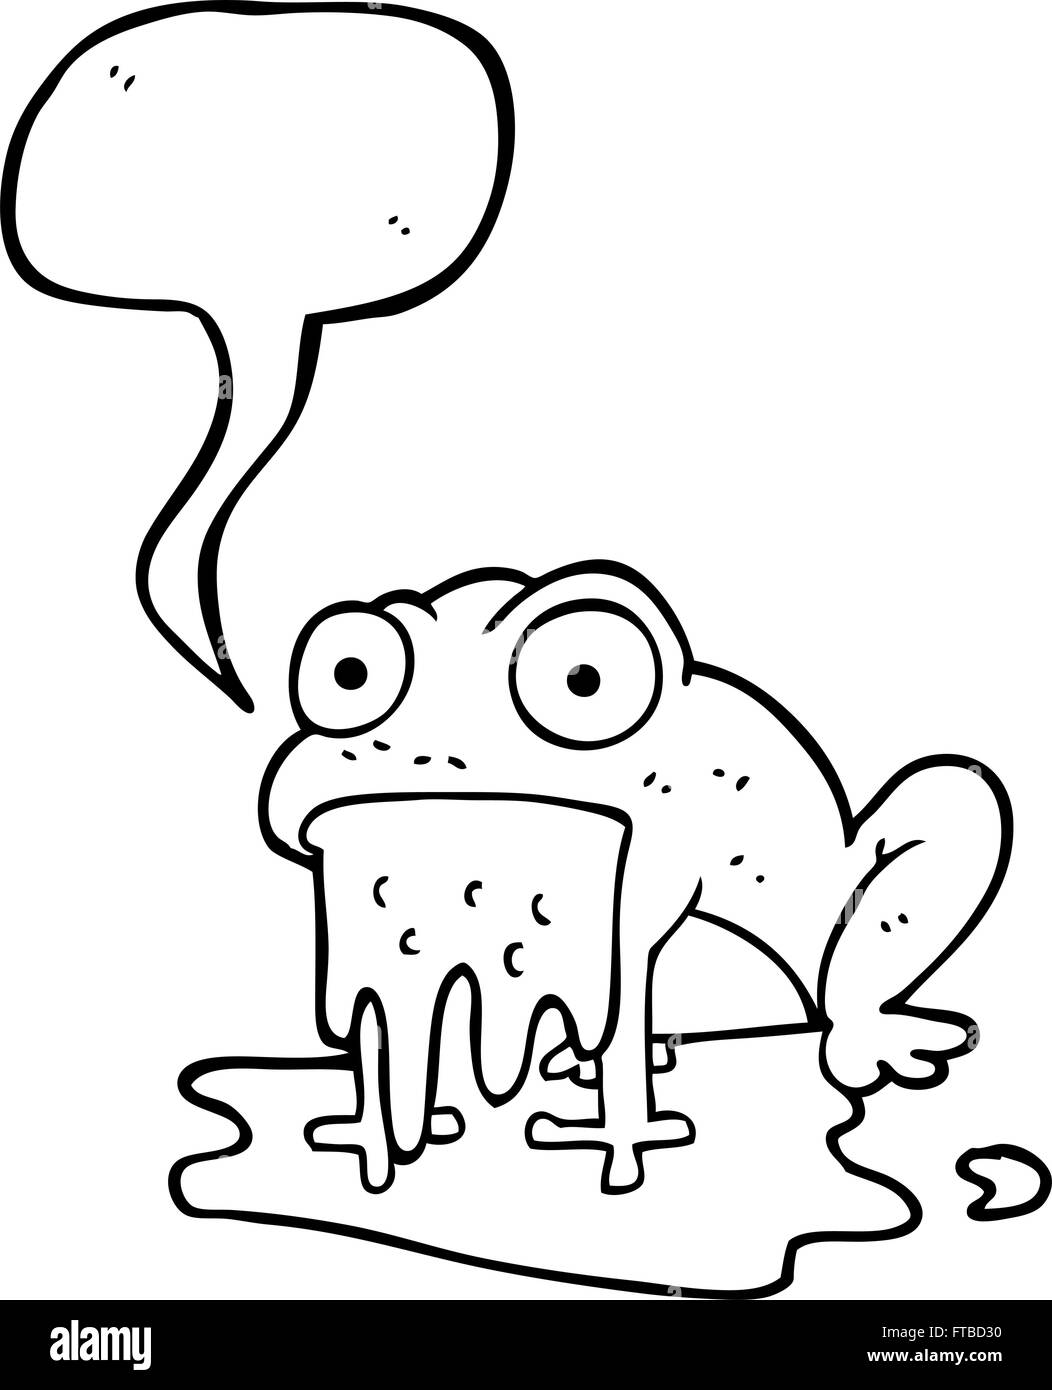 freehand drawn speech bubble cartoon gross little frog Stock Vector